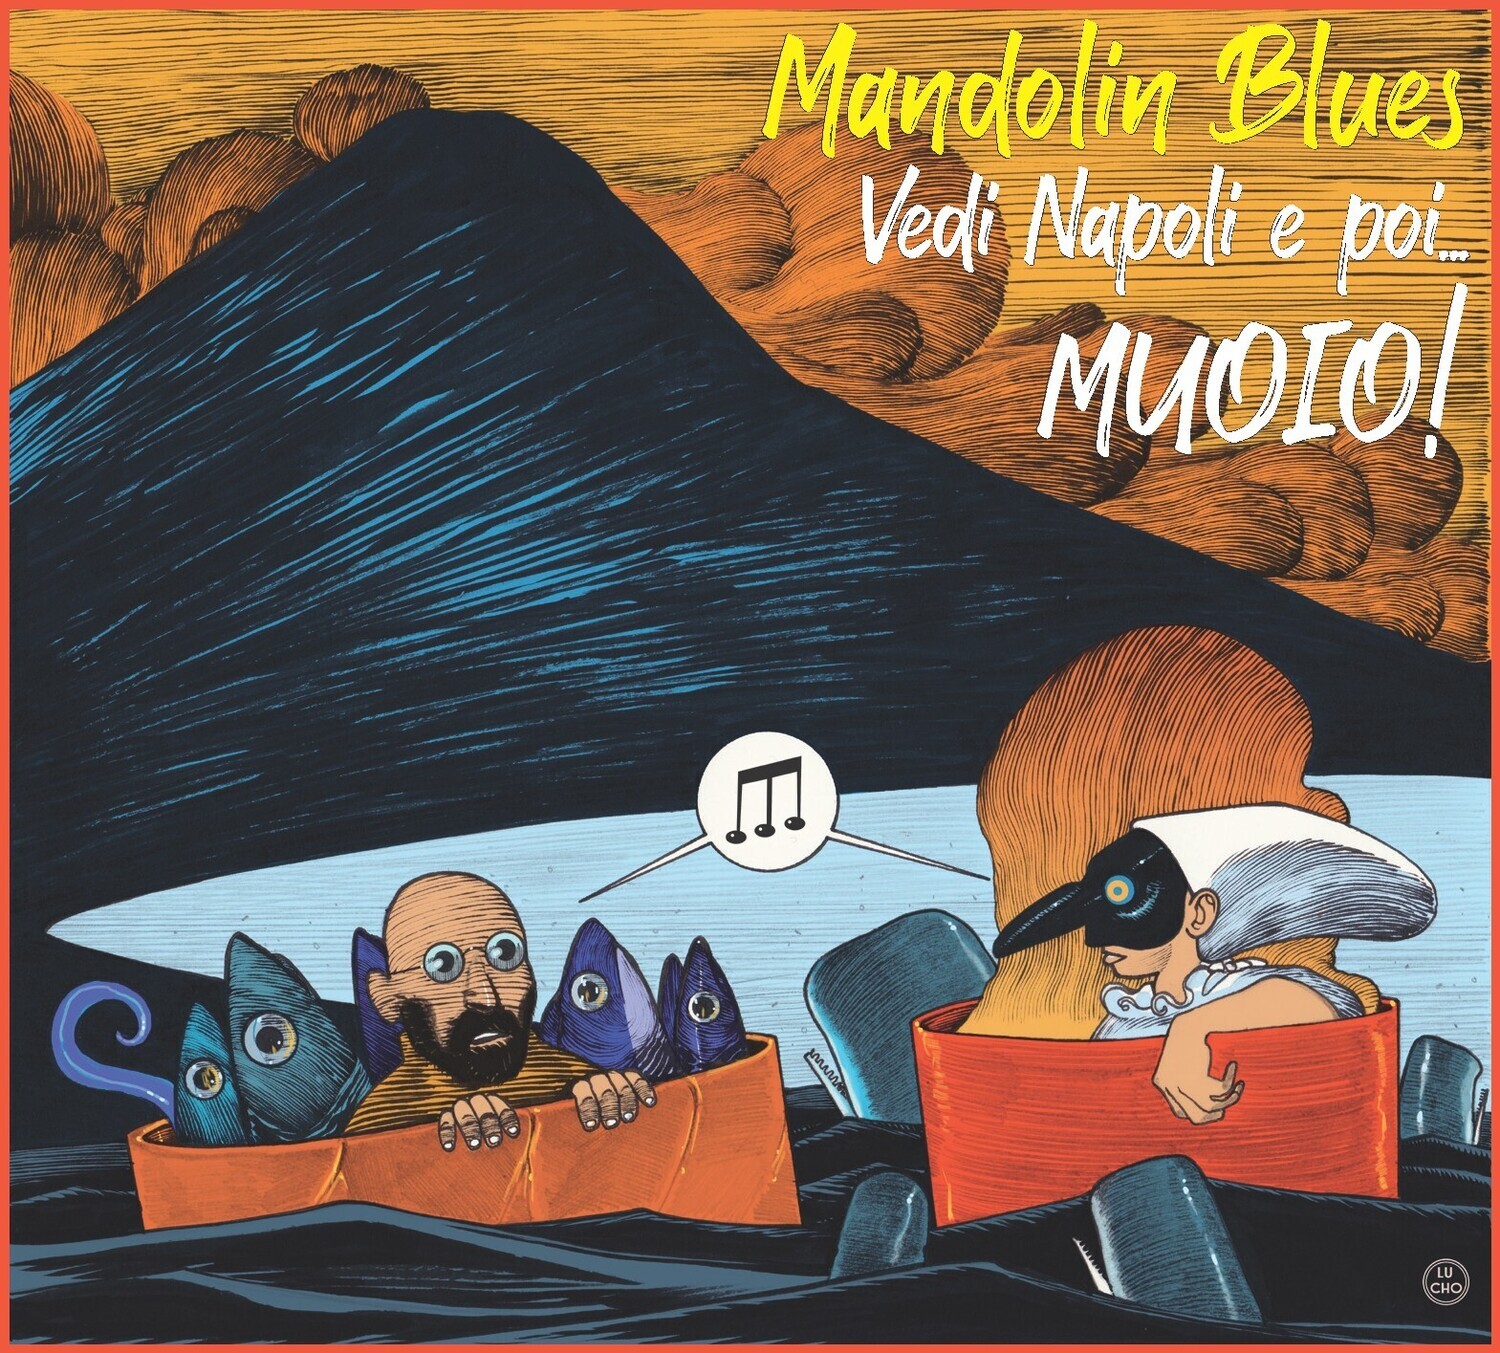 Lino Muoio - MANDOLIN BLUES "VEDI NAPOLI E POI...MUOIO!" (CD) Limited Deluxe Edition